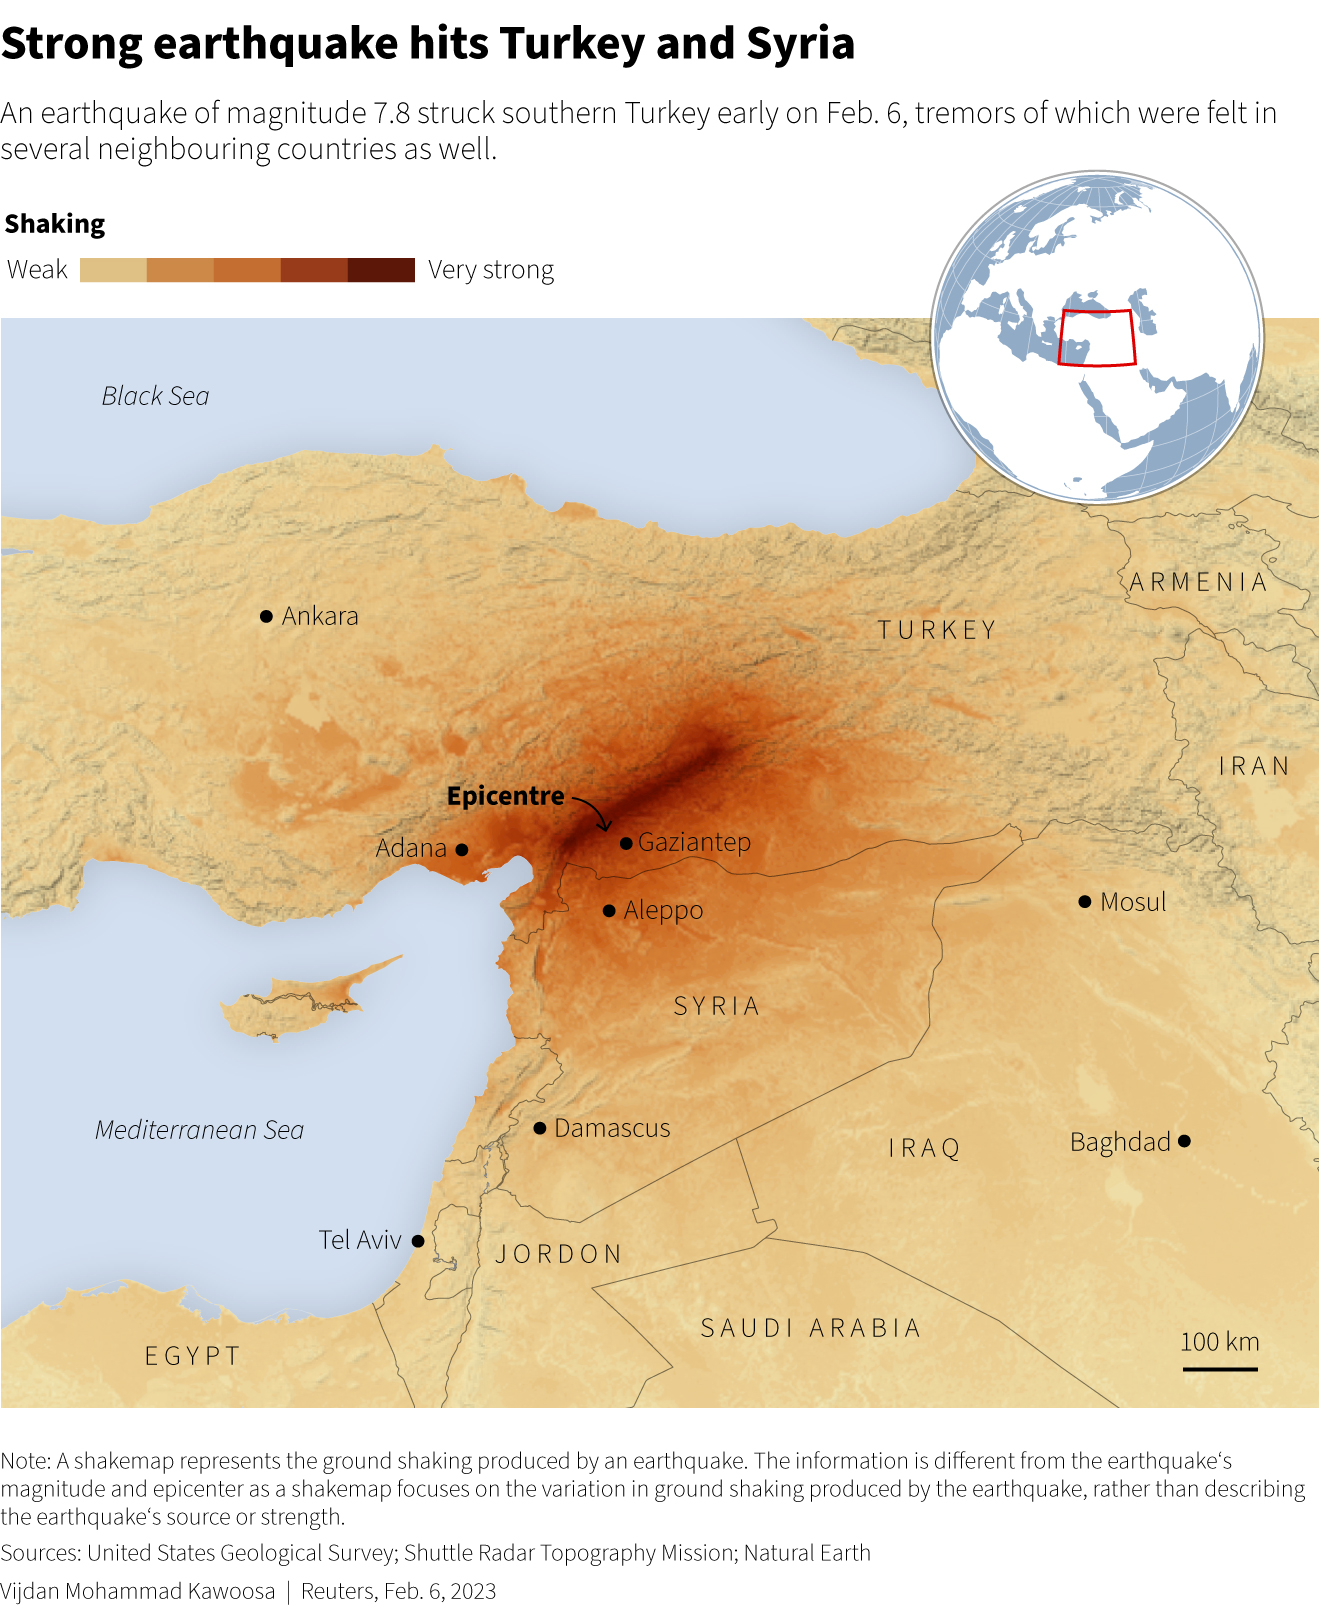 Un gran terremoto mata a 3.700 personas en Turquía y Siria, el clima golpea a los sobrevivientes